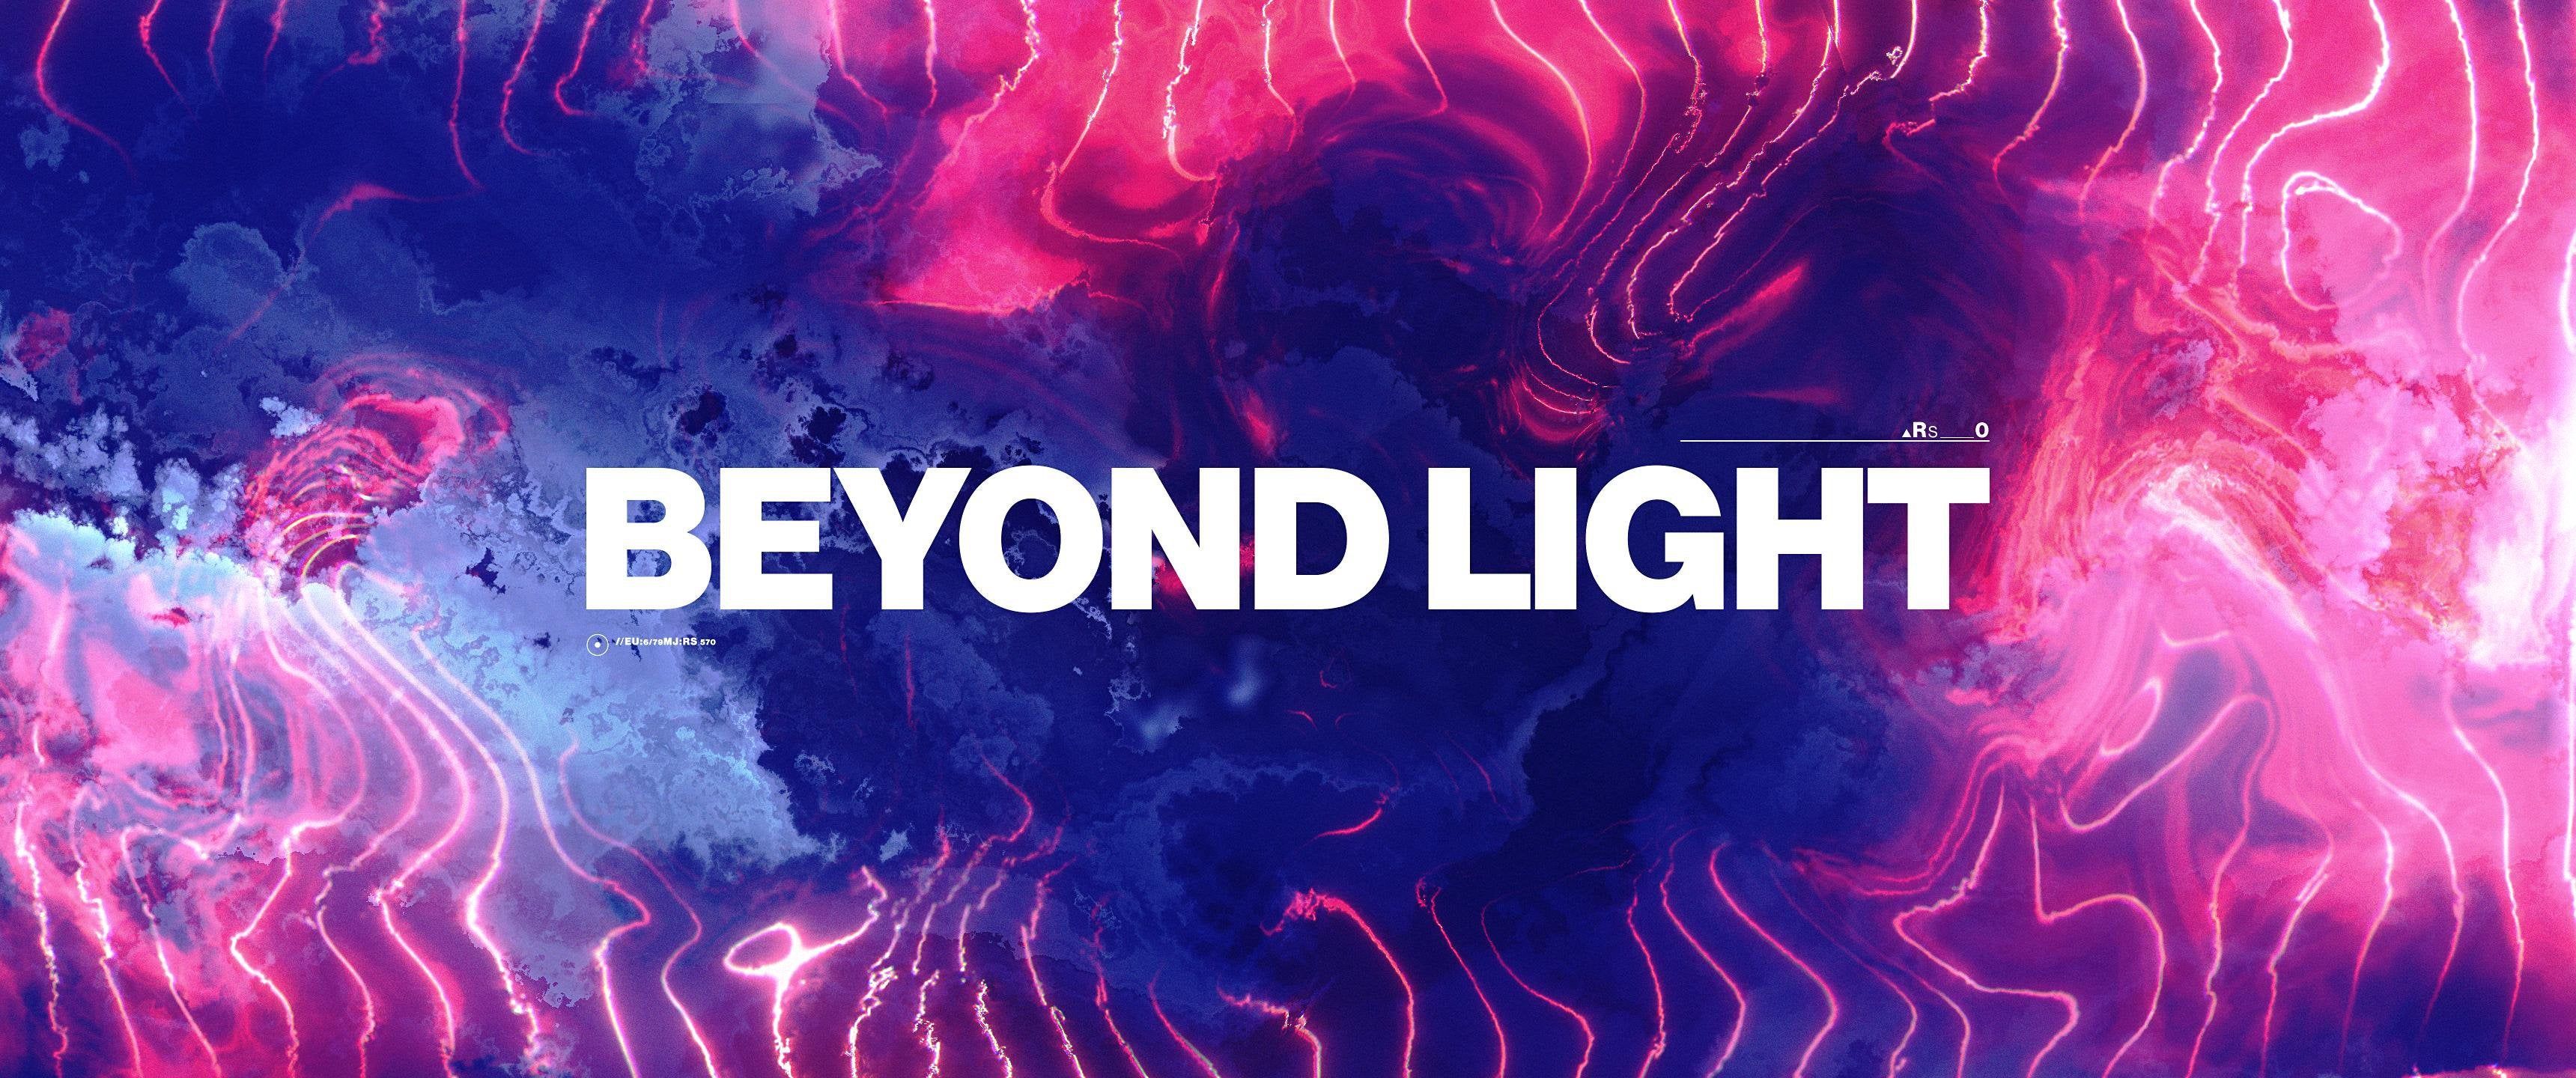 Destiny: Beyond Light Wallpaper